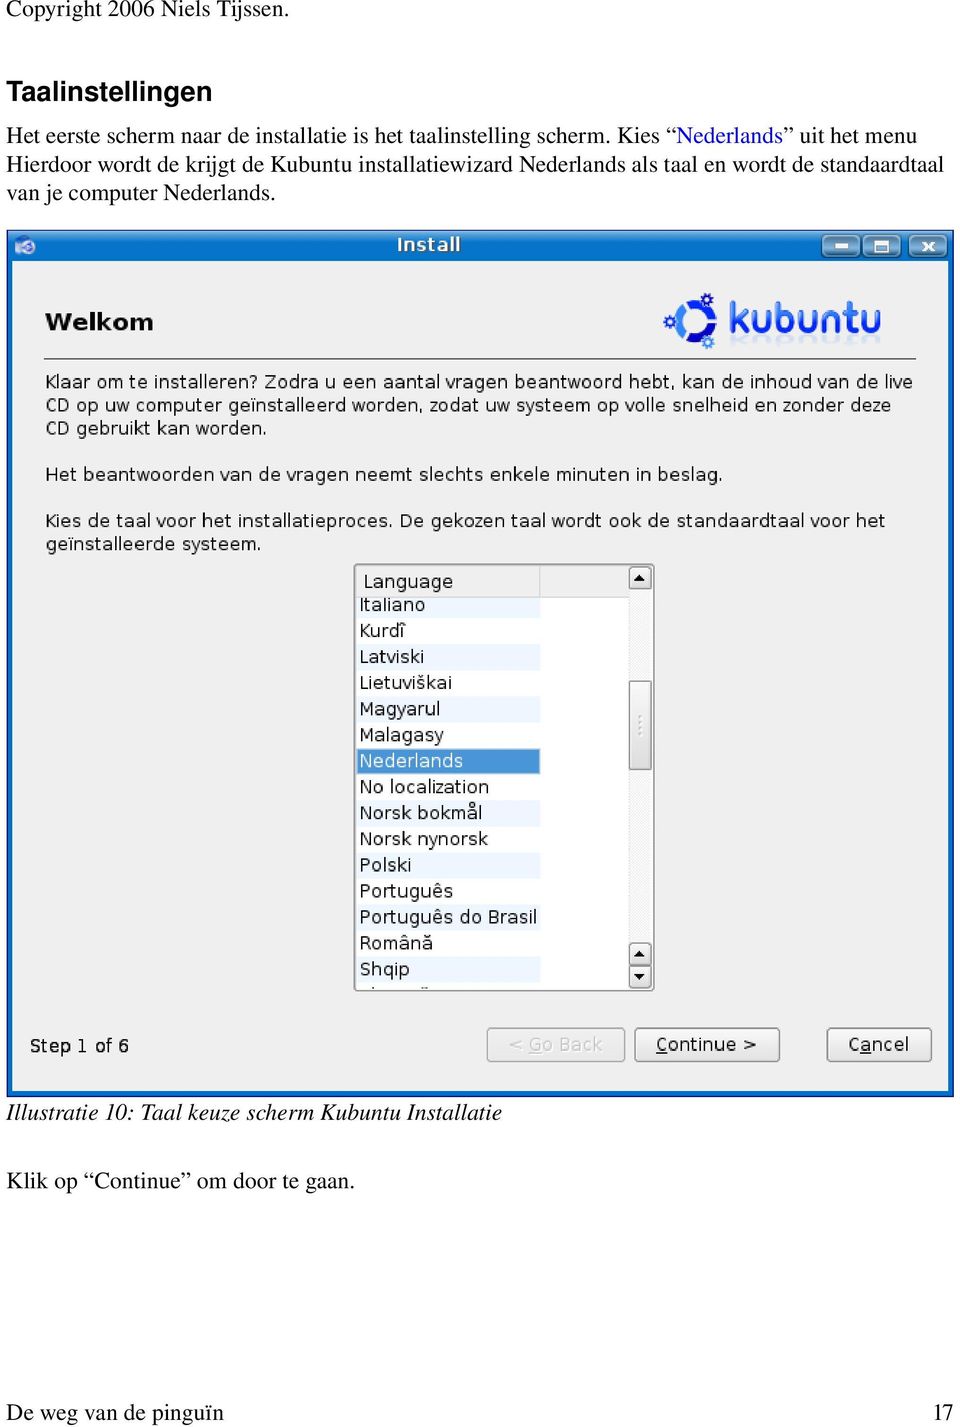 Kies Nederlands uit het menu Hierdoor wordt de krijgt de Kubuntu installatiewizard